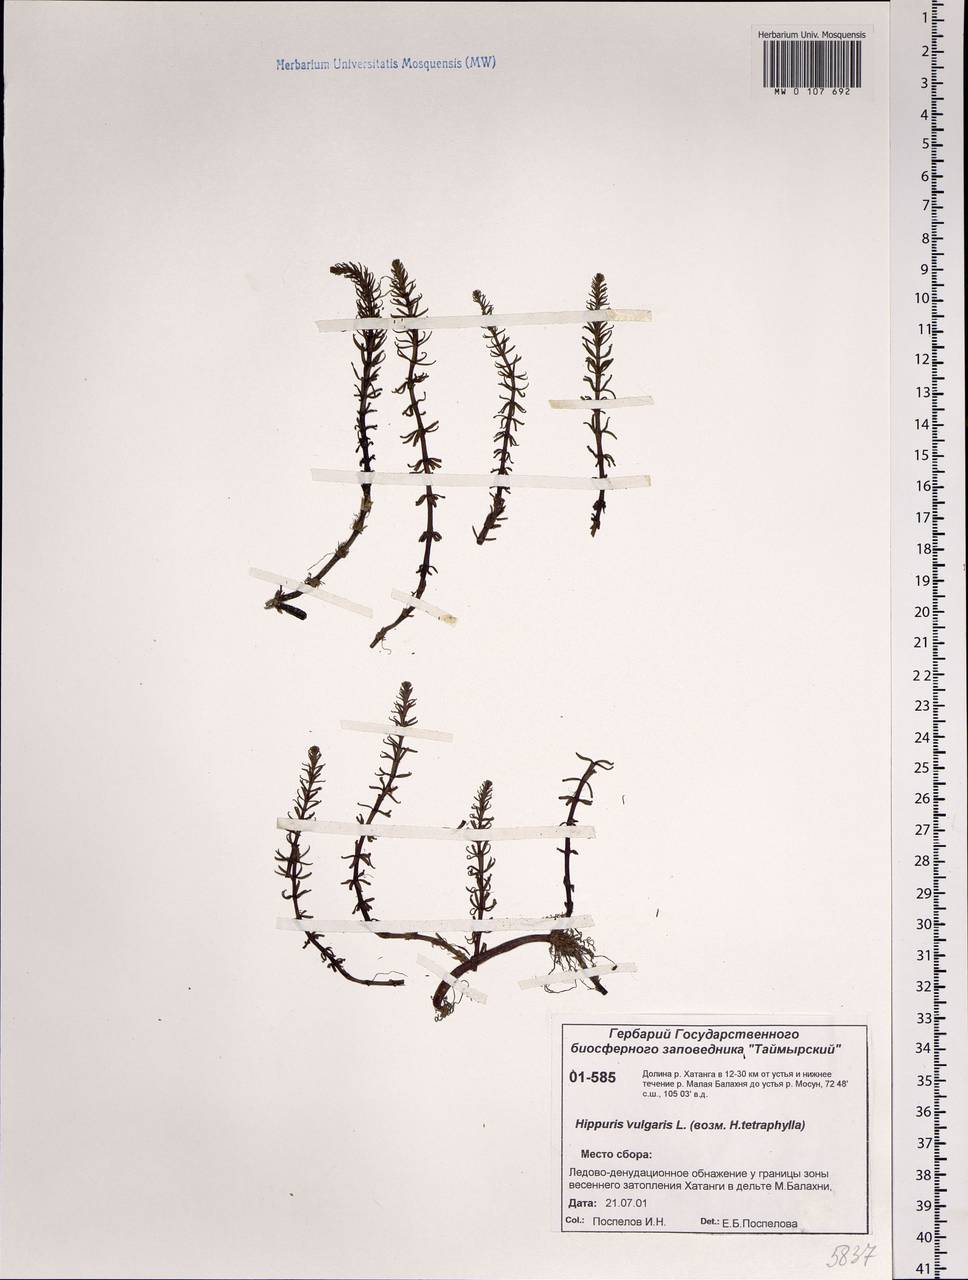 Hippuris vulgaris L., Siberia, Central Siberia (S3) (Russia)